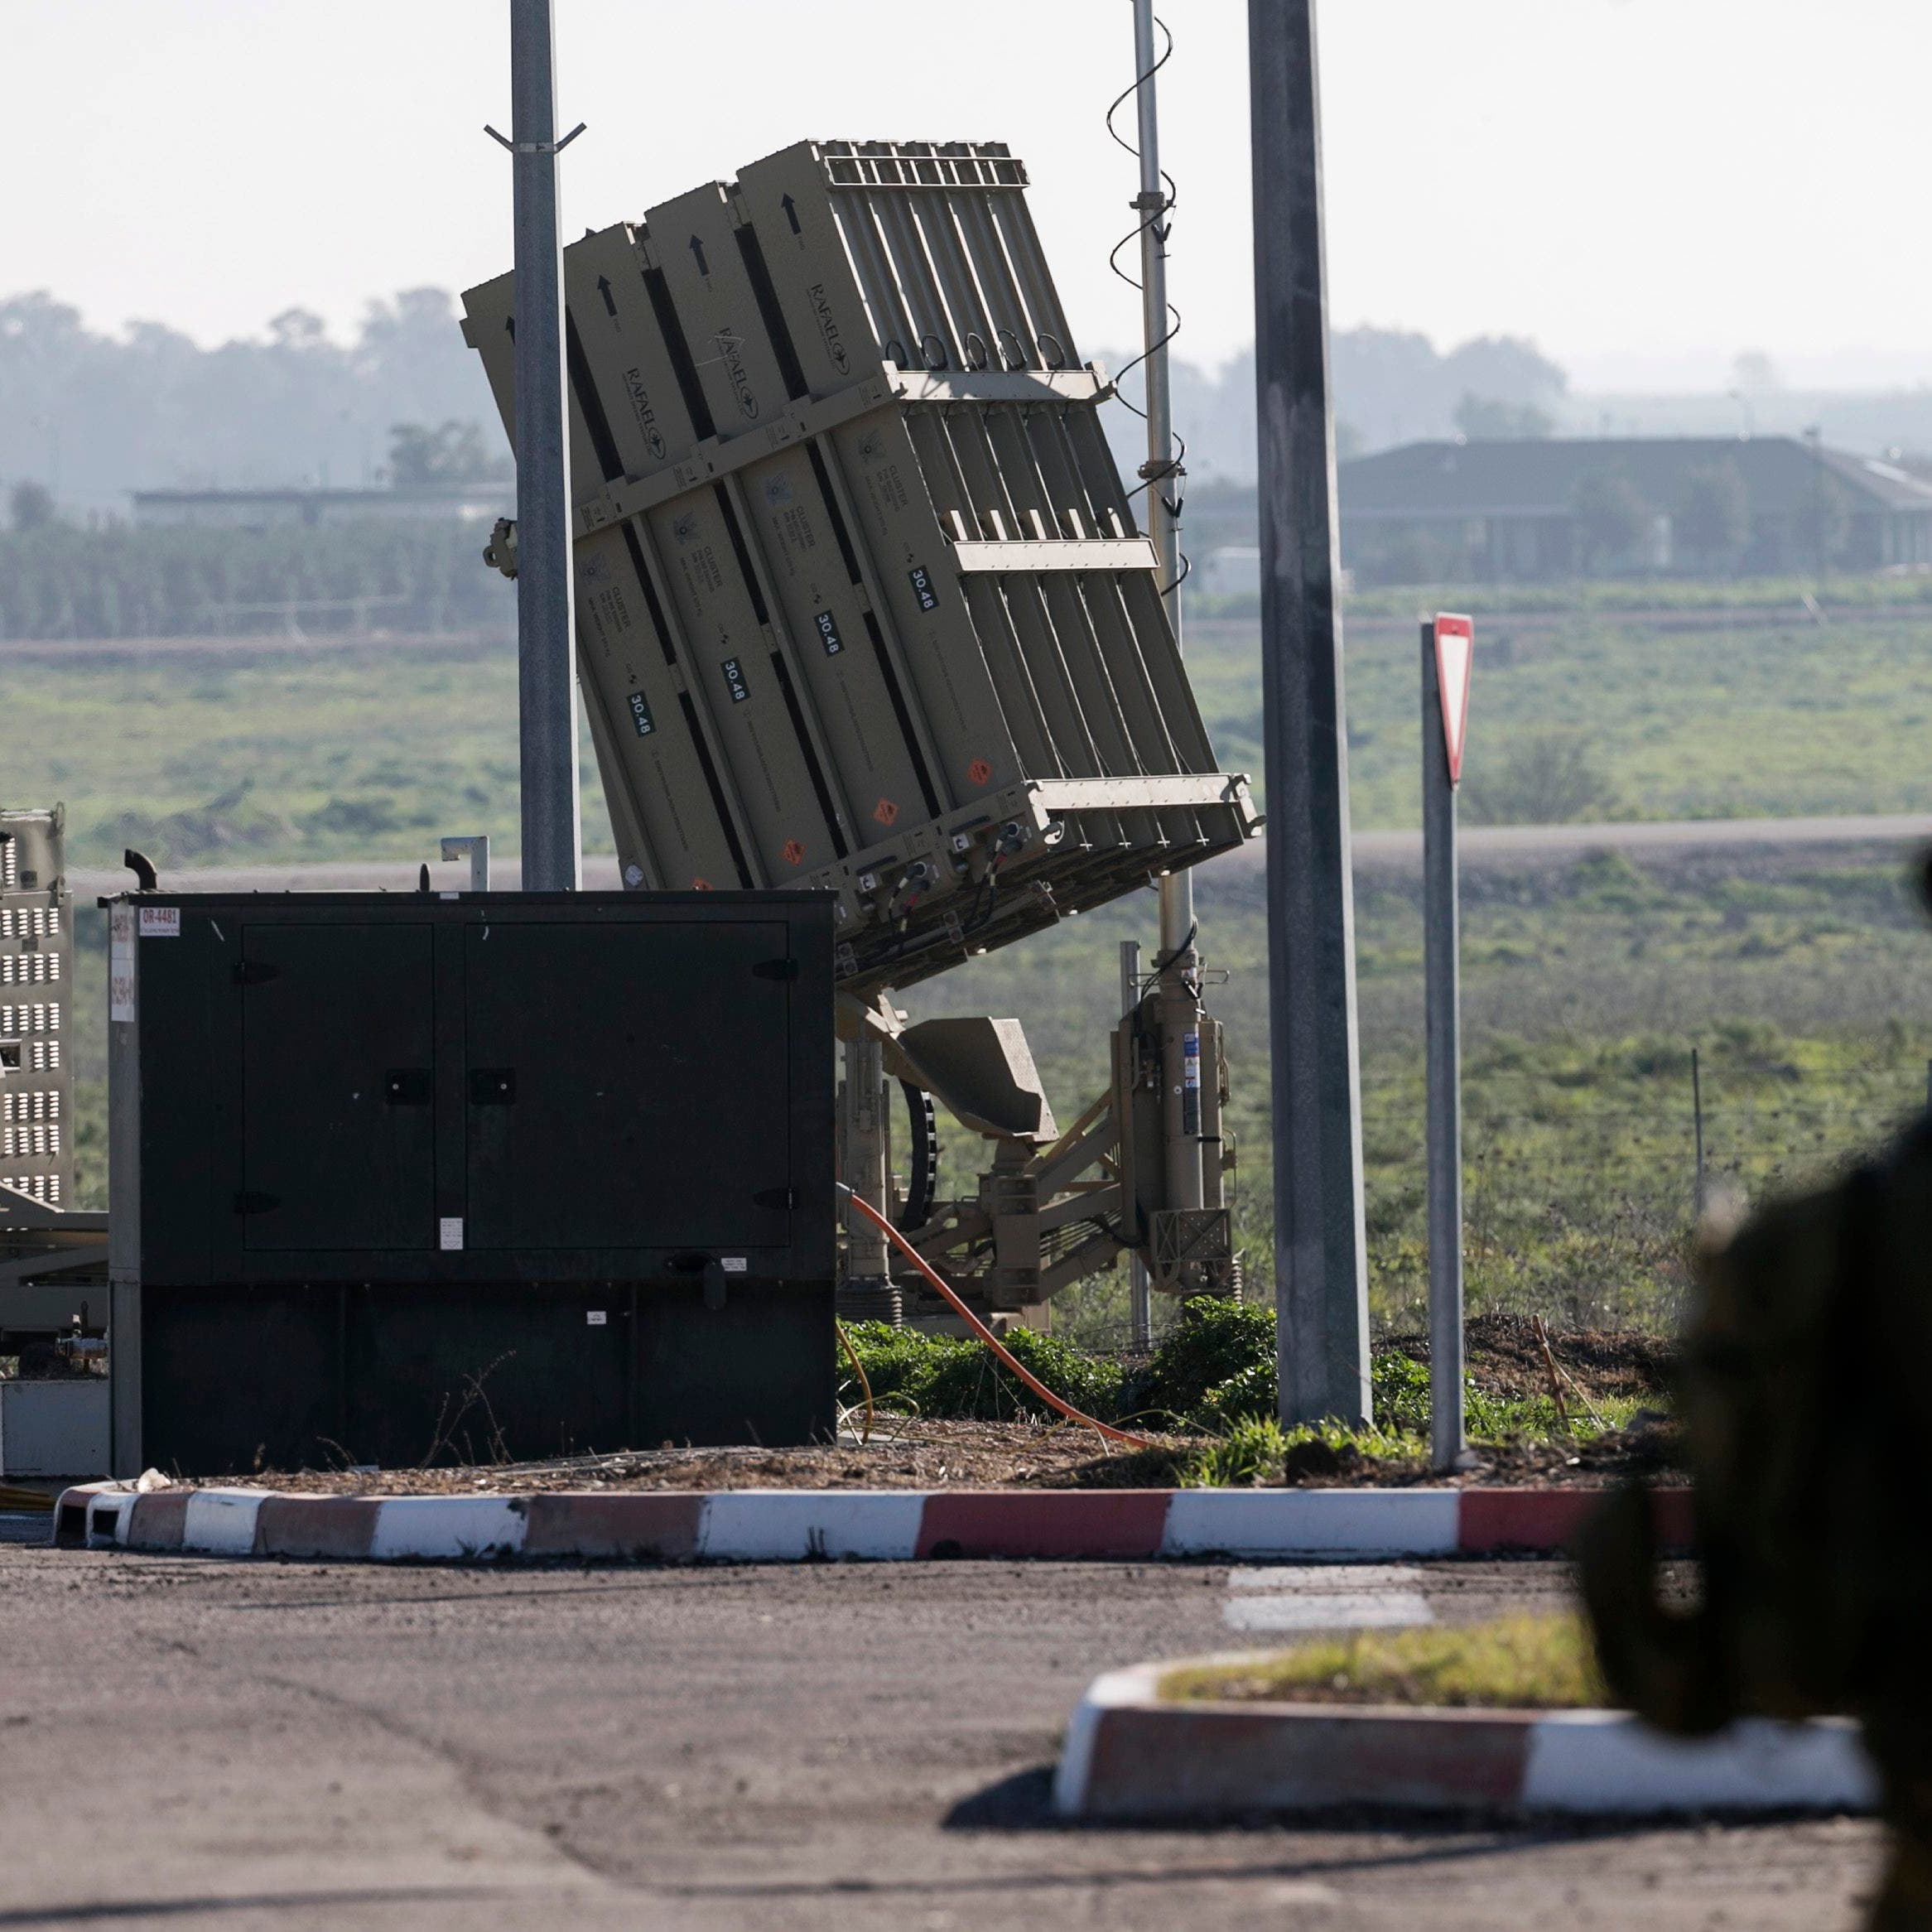 إسرائيل تعلن تحديث منظومة القبة الحديدية الدفاعية